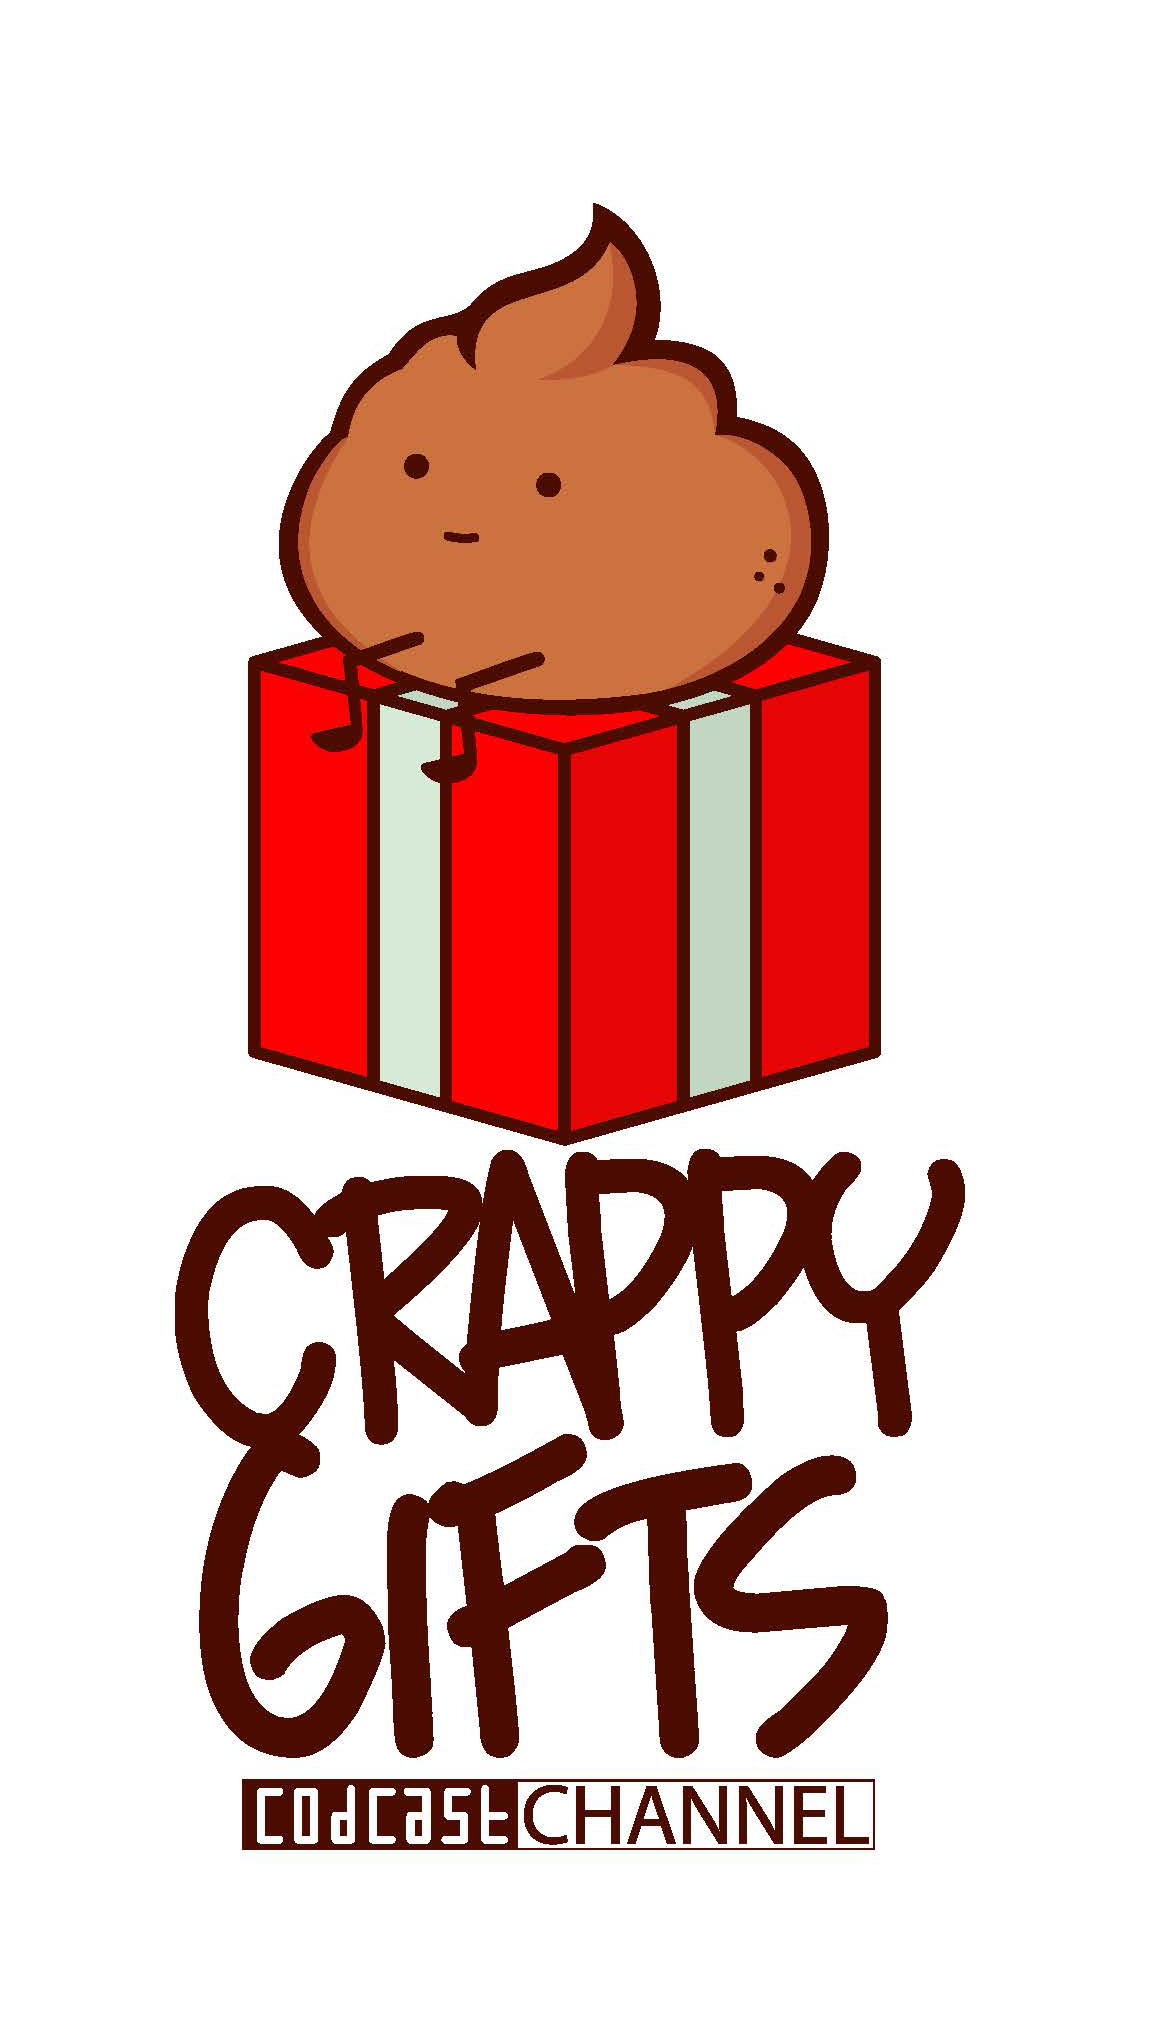 crappy gifts_draft01_Pagina_1